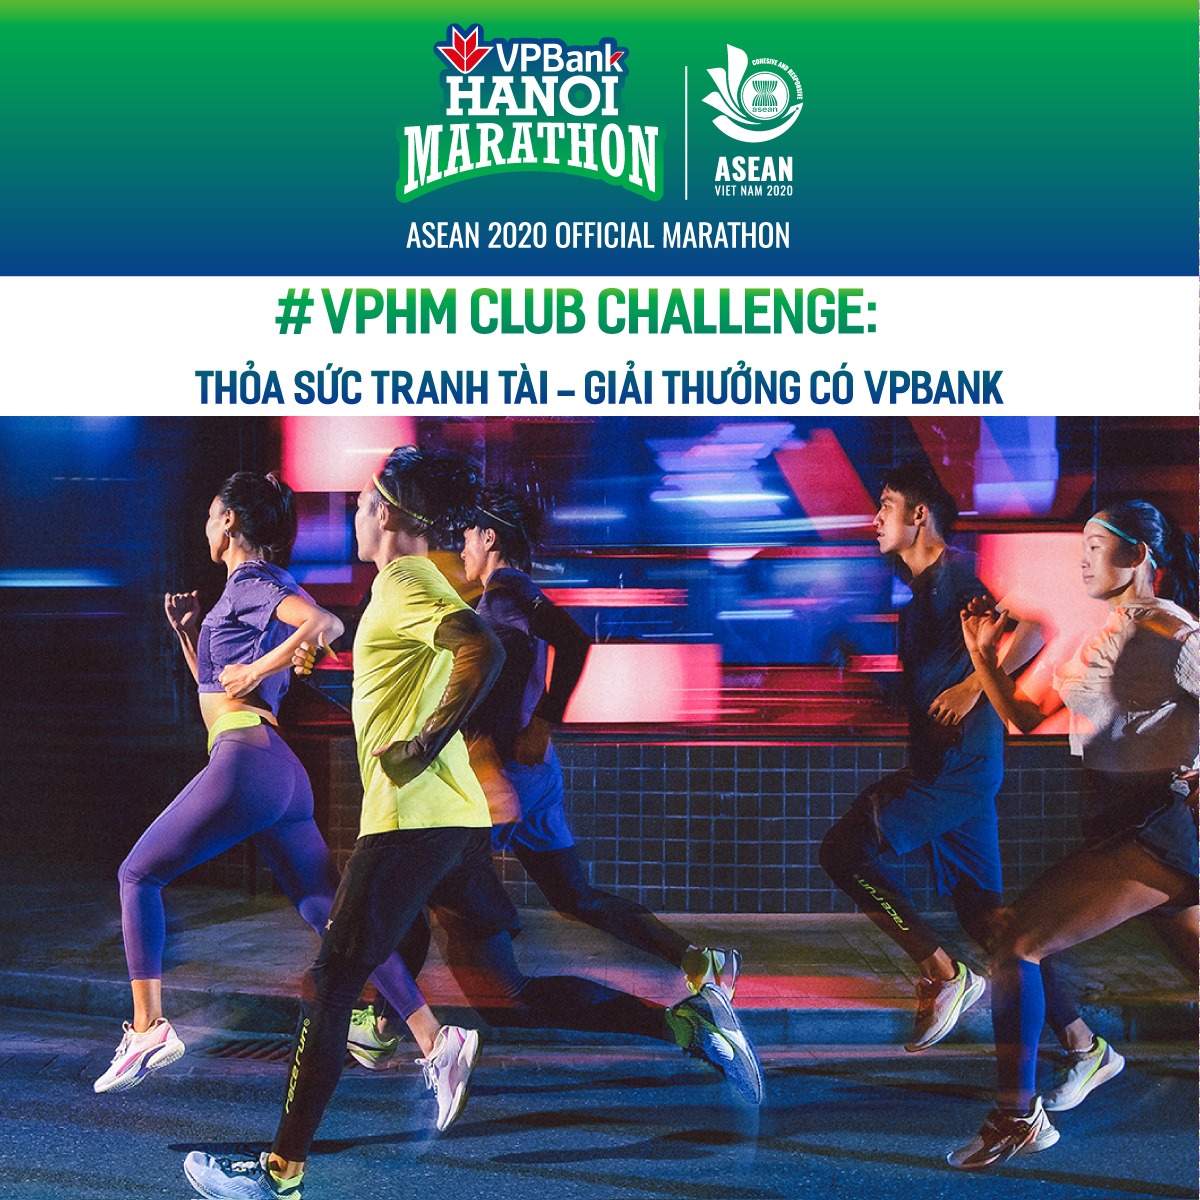 VPHM Club Challenge - Thử thách dành cho các CLB trên 84RACE